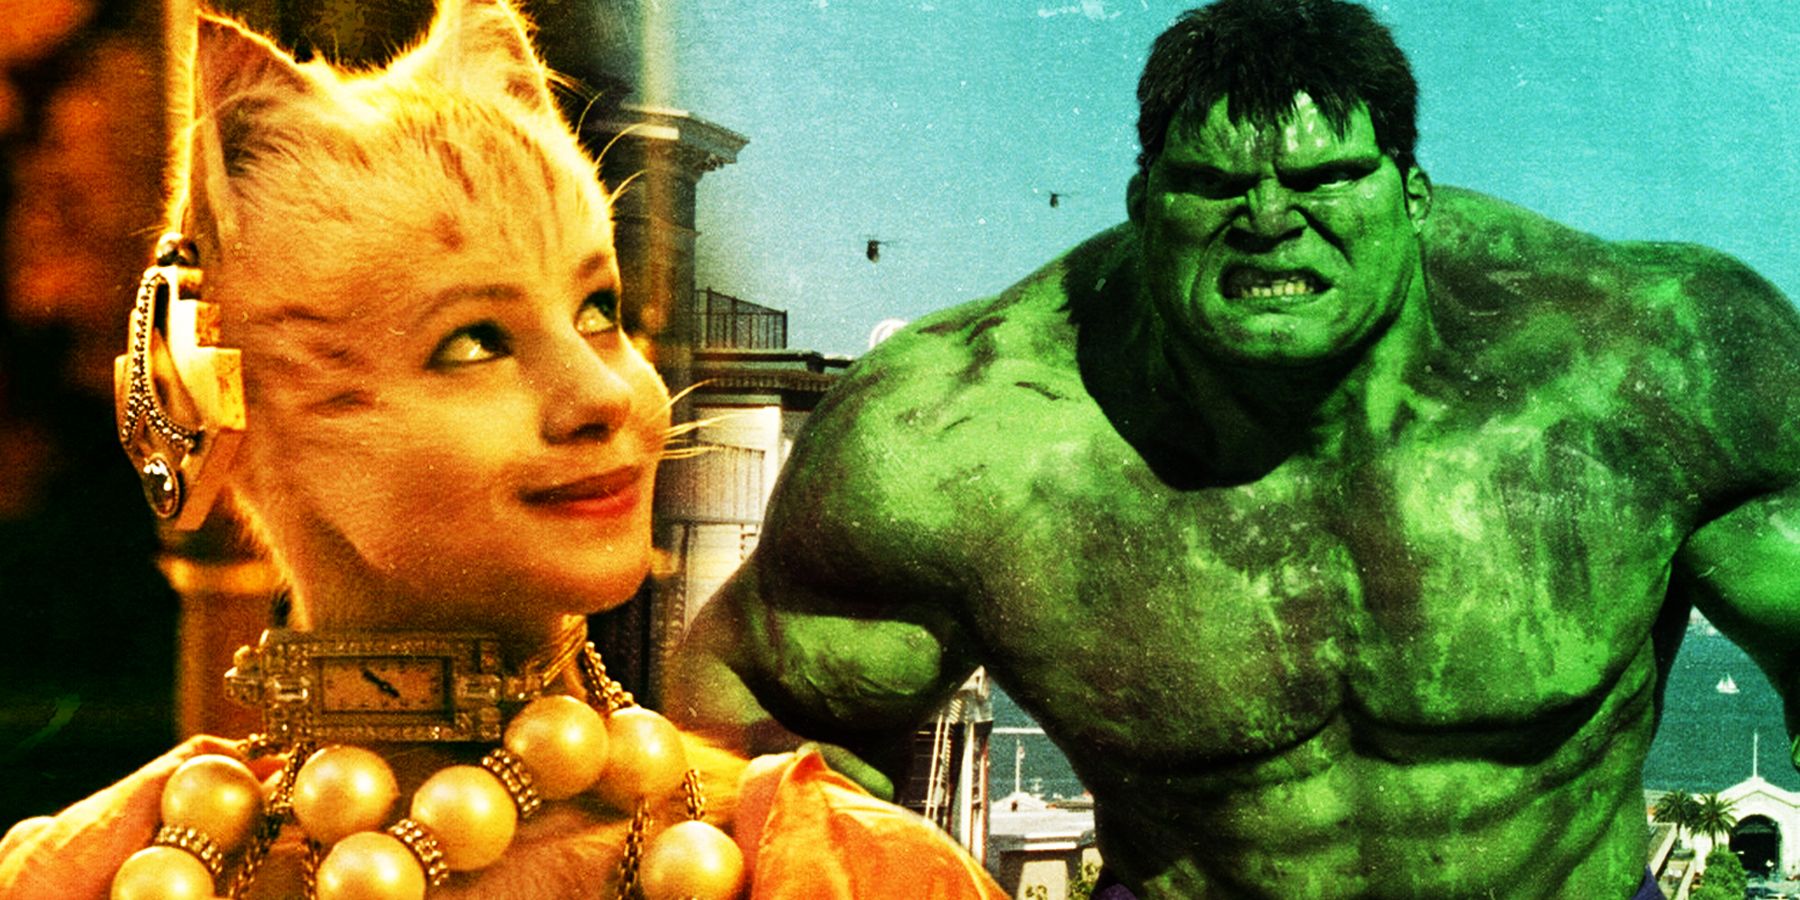 Bombalurina from 2019 movie Cats and Hulk form 2003's The Hulk